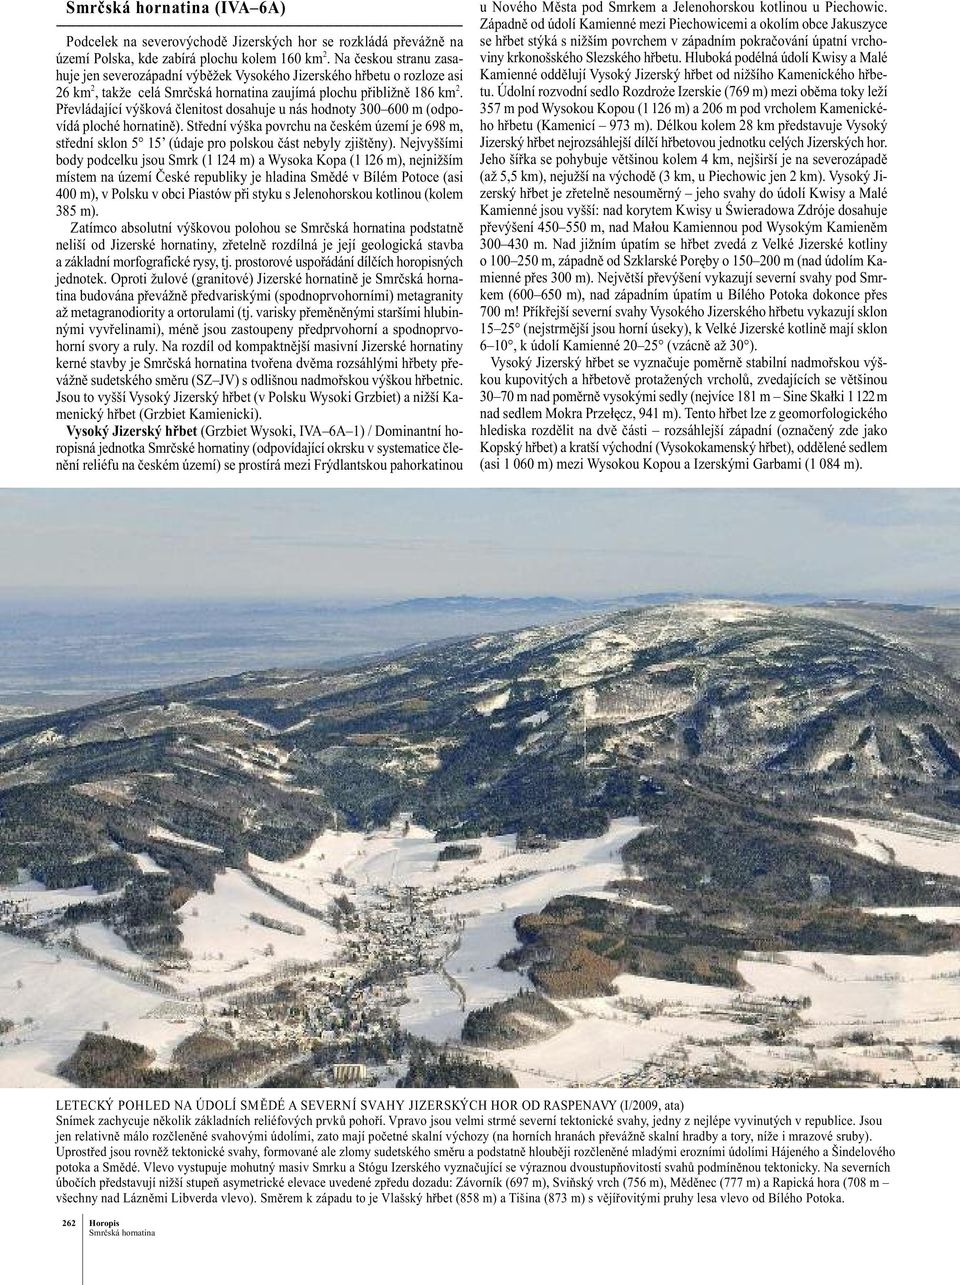 Na českou stranu zasahuje jen severozápadní výběžek Vysokého Jizerského hřbetu o rozloze asi 26 km 2, takže celá Smrčská hornatina zaujímá plochu přibližně 186 km 2.